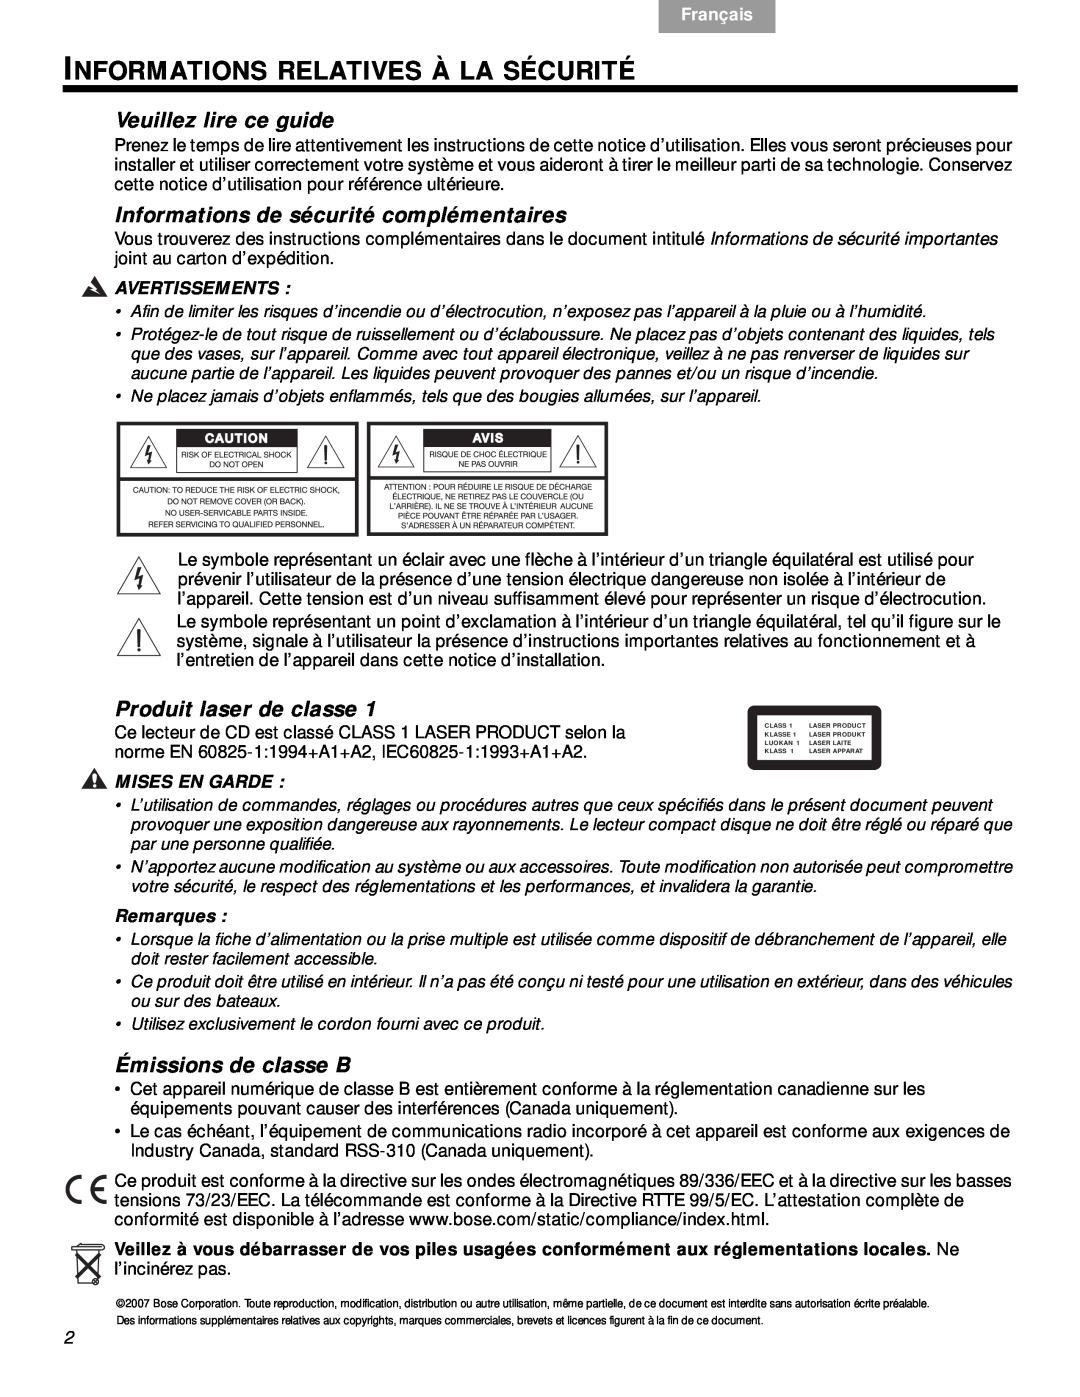 Bose VS-2 Informations Relatives À La Sécurité, Veuillez lire ce guide, Informations de sécurité complémentaires, Français 